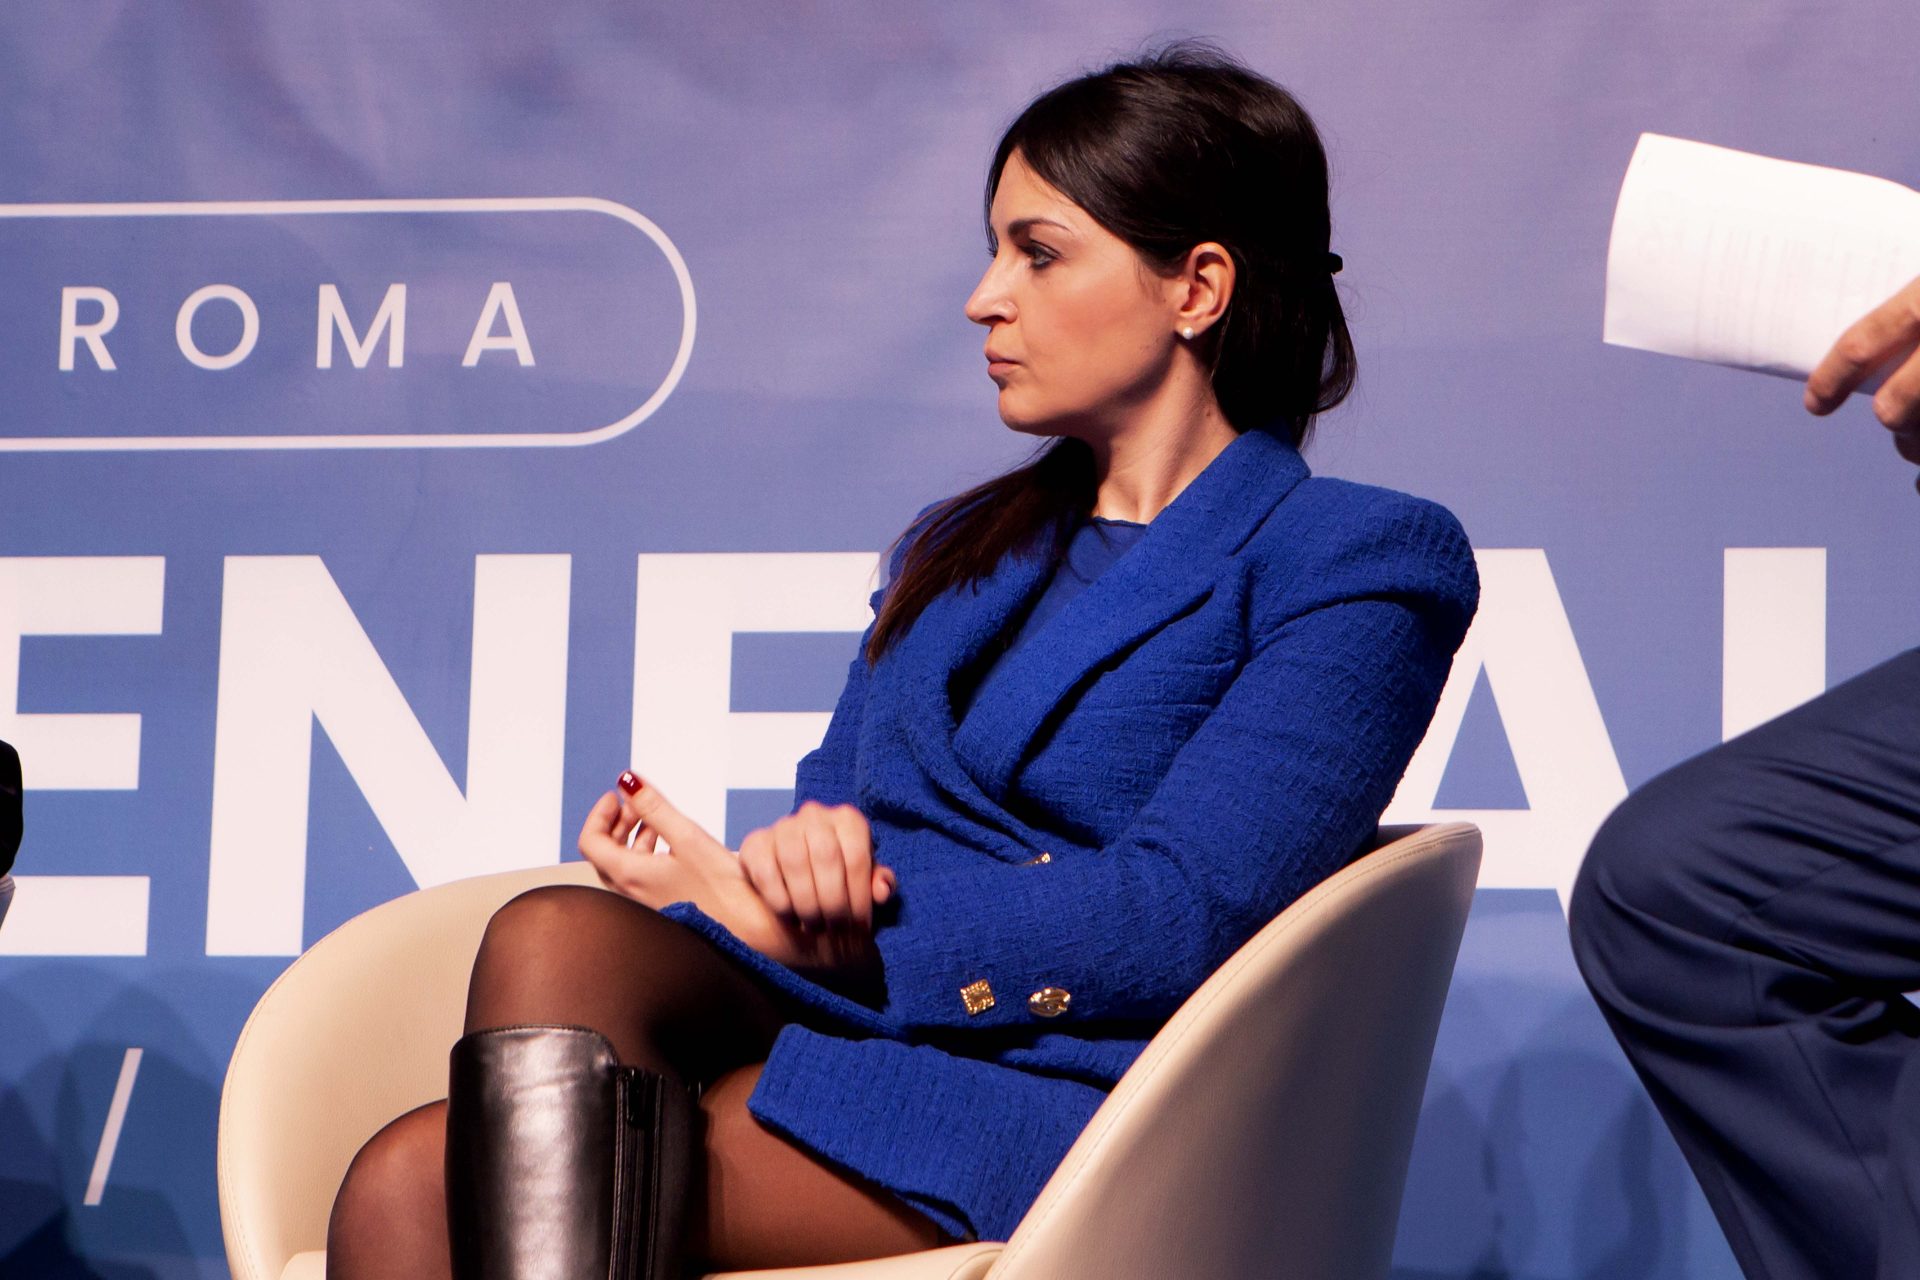 Maria Cristina Pisani, presidente Cng, seduta su una sedia su sfondo blu con scritte, probabilmente a un evento